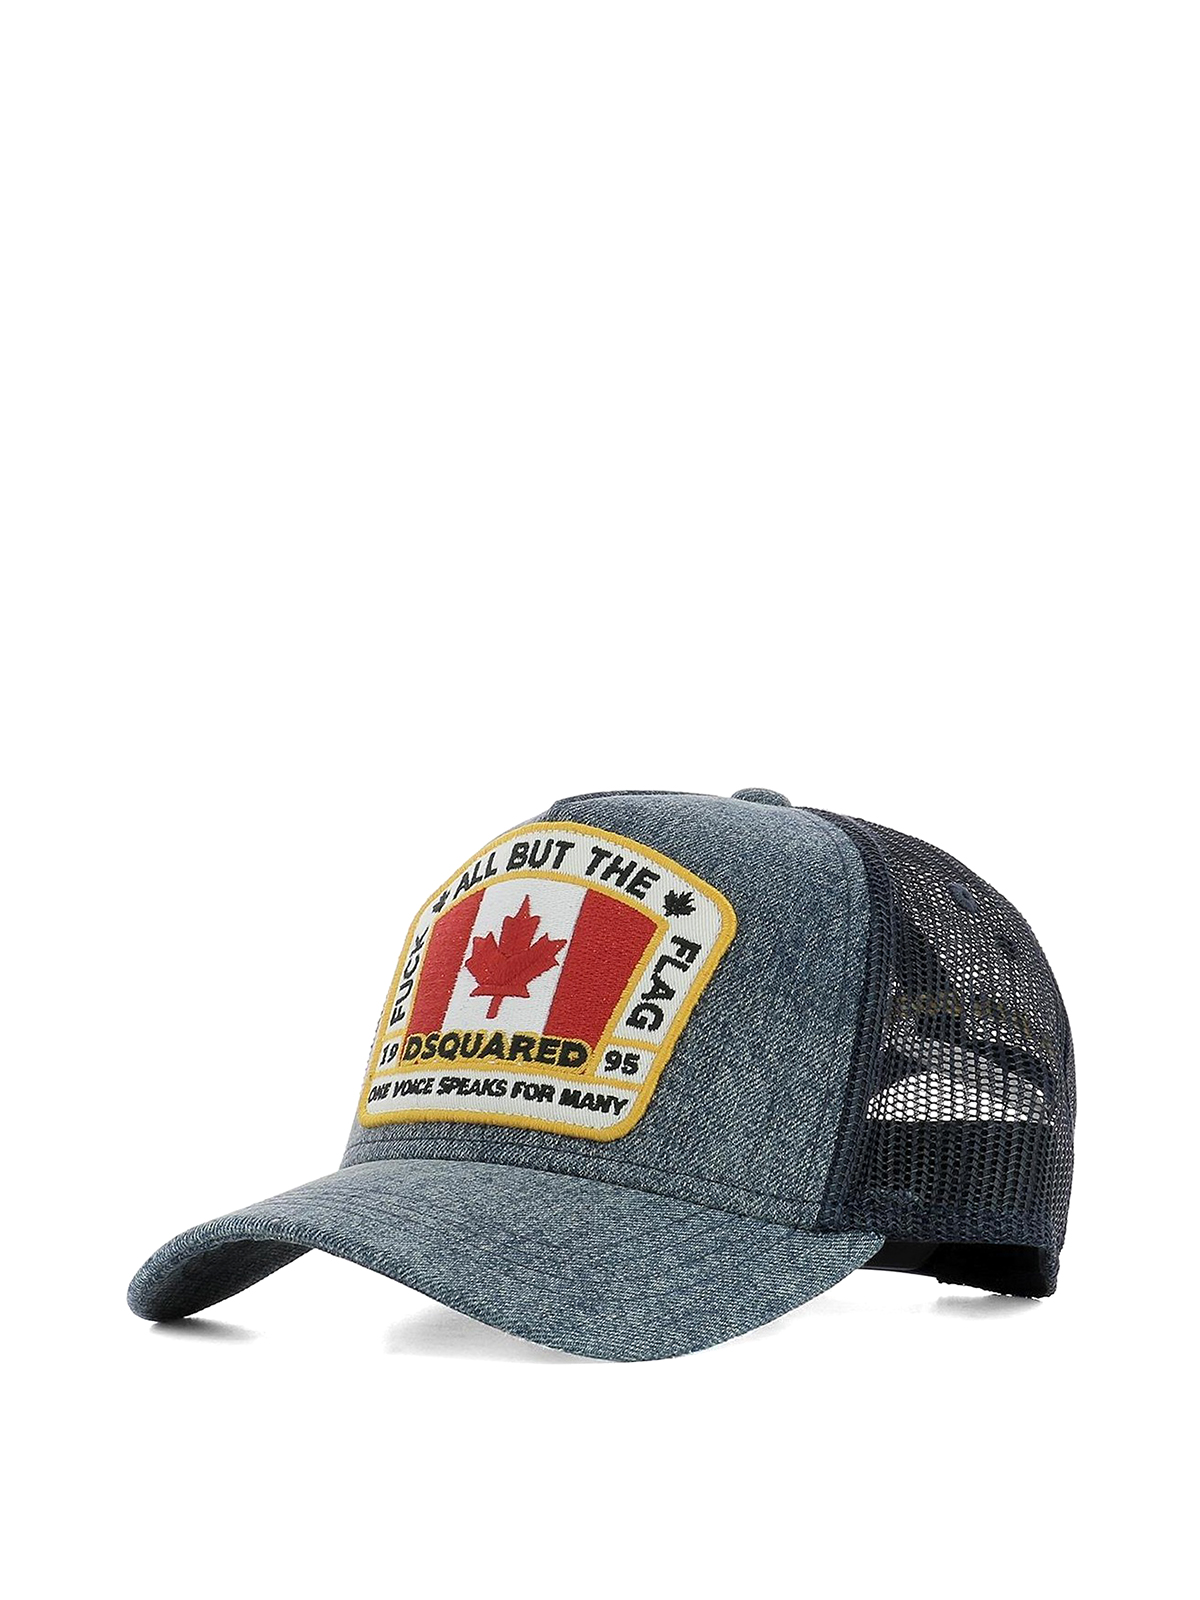 Canada patch baseball cap